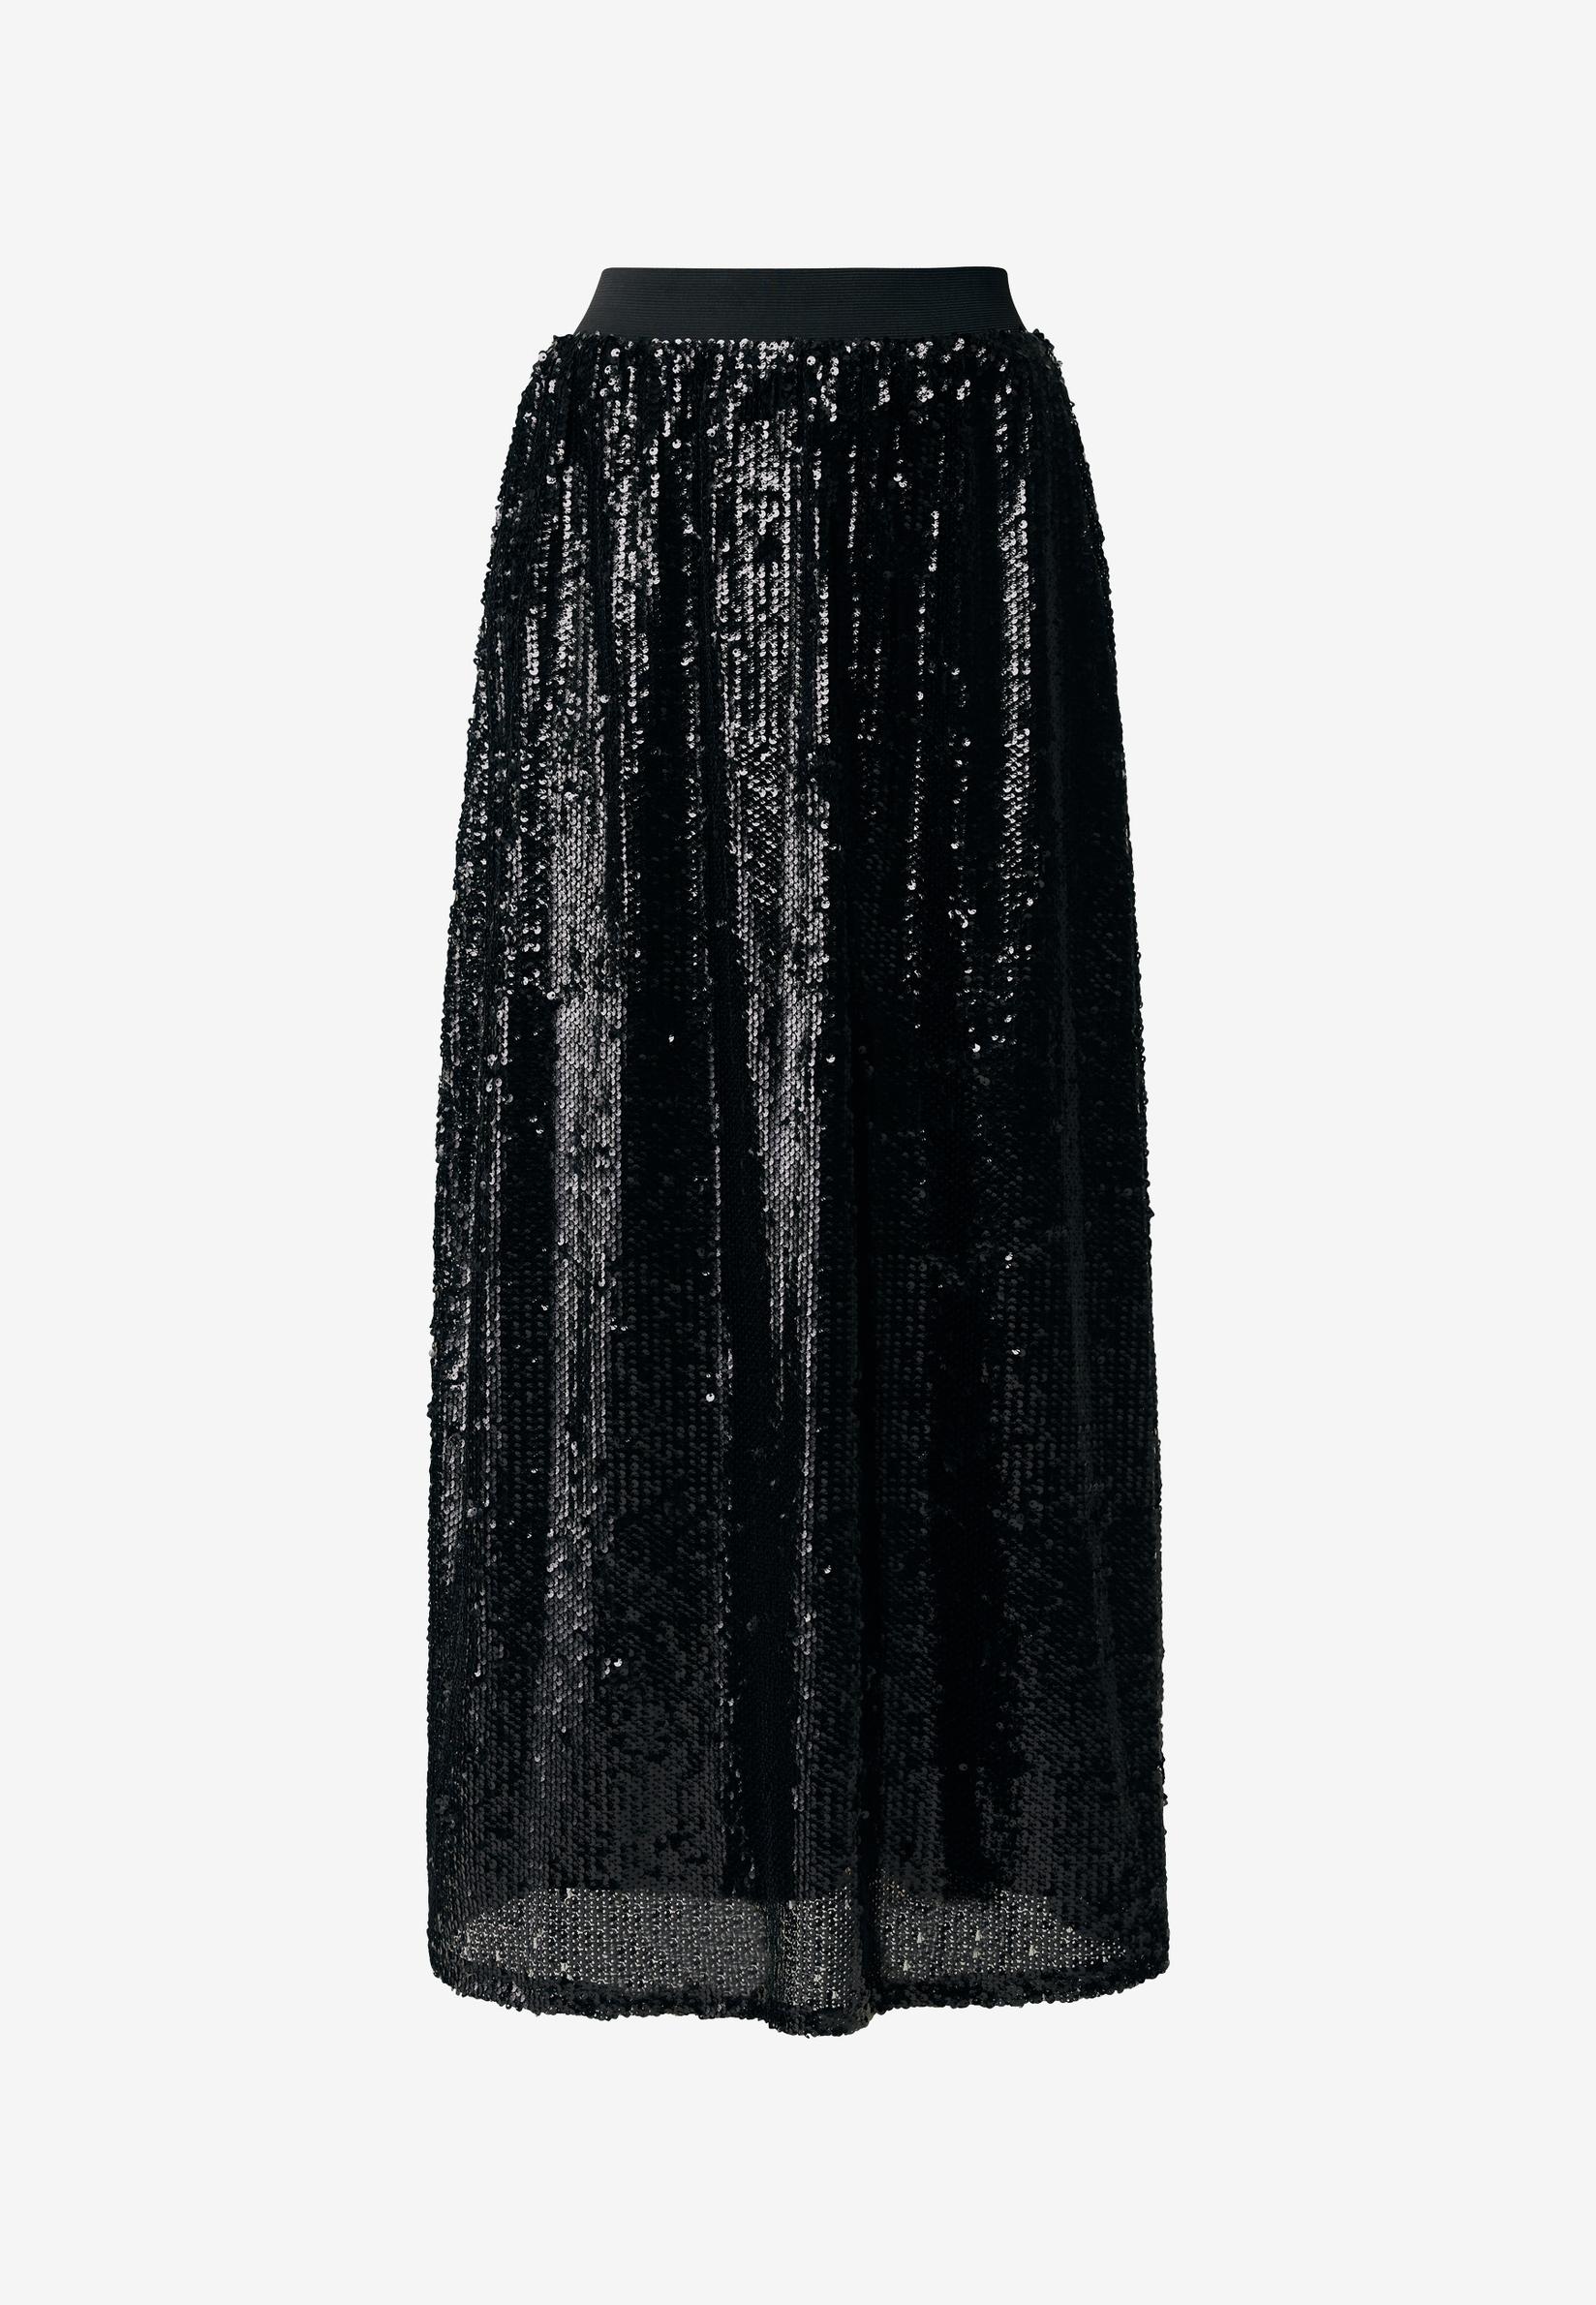 Selected image for MEXX Ženska suknja crna